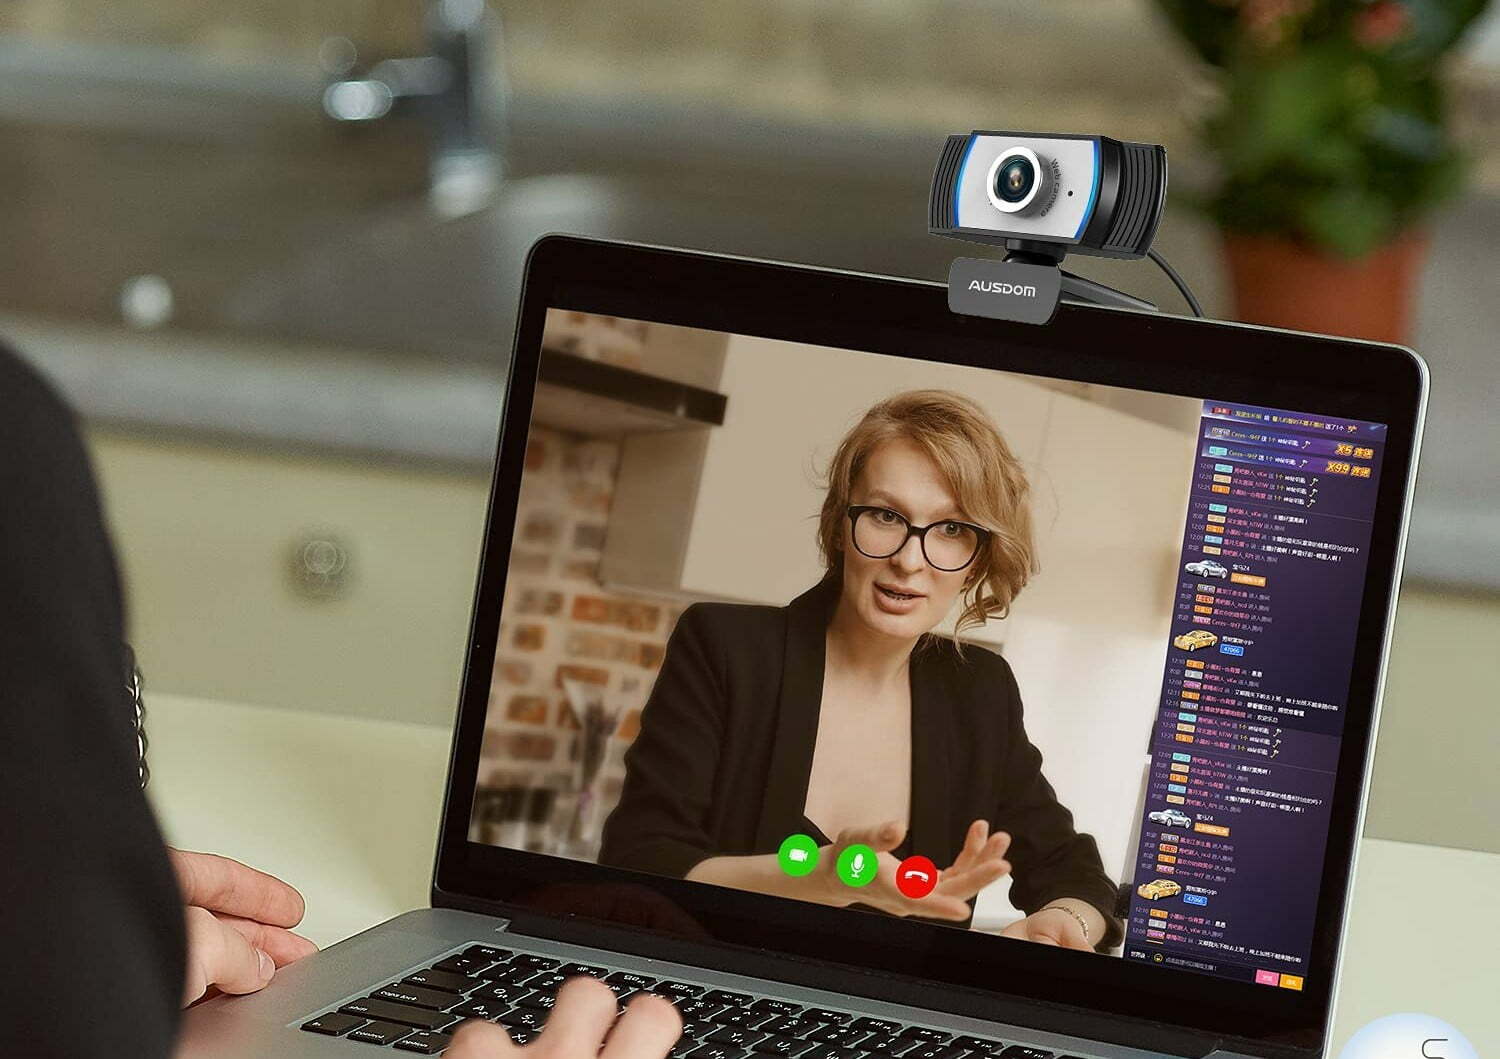 Làm mờ nền webcam sẽ giúp bạn tập trung vào chủ đề được trình bày trên màn hình. Điều này sẽ giúp cho người xem dễ dàng theo dõi và hiểu rõ hơn thông tin truyền tải.